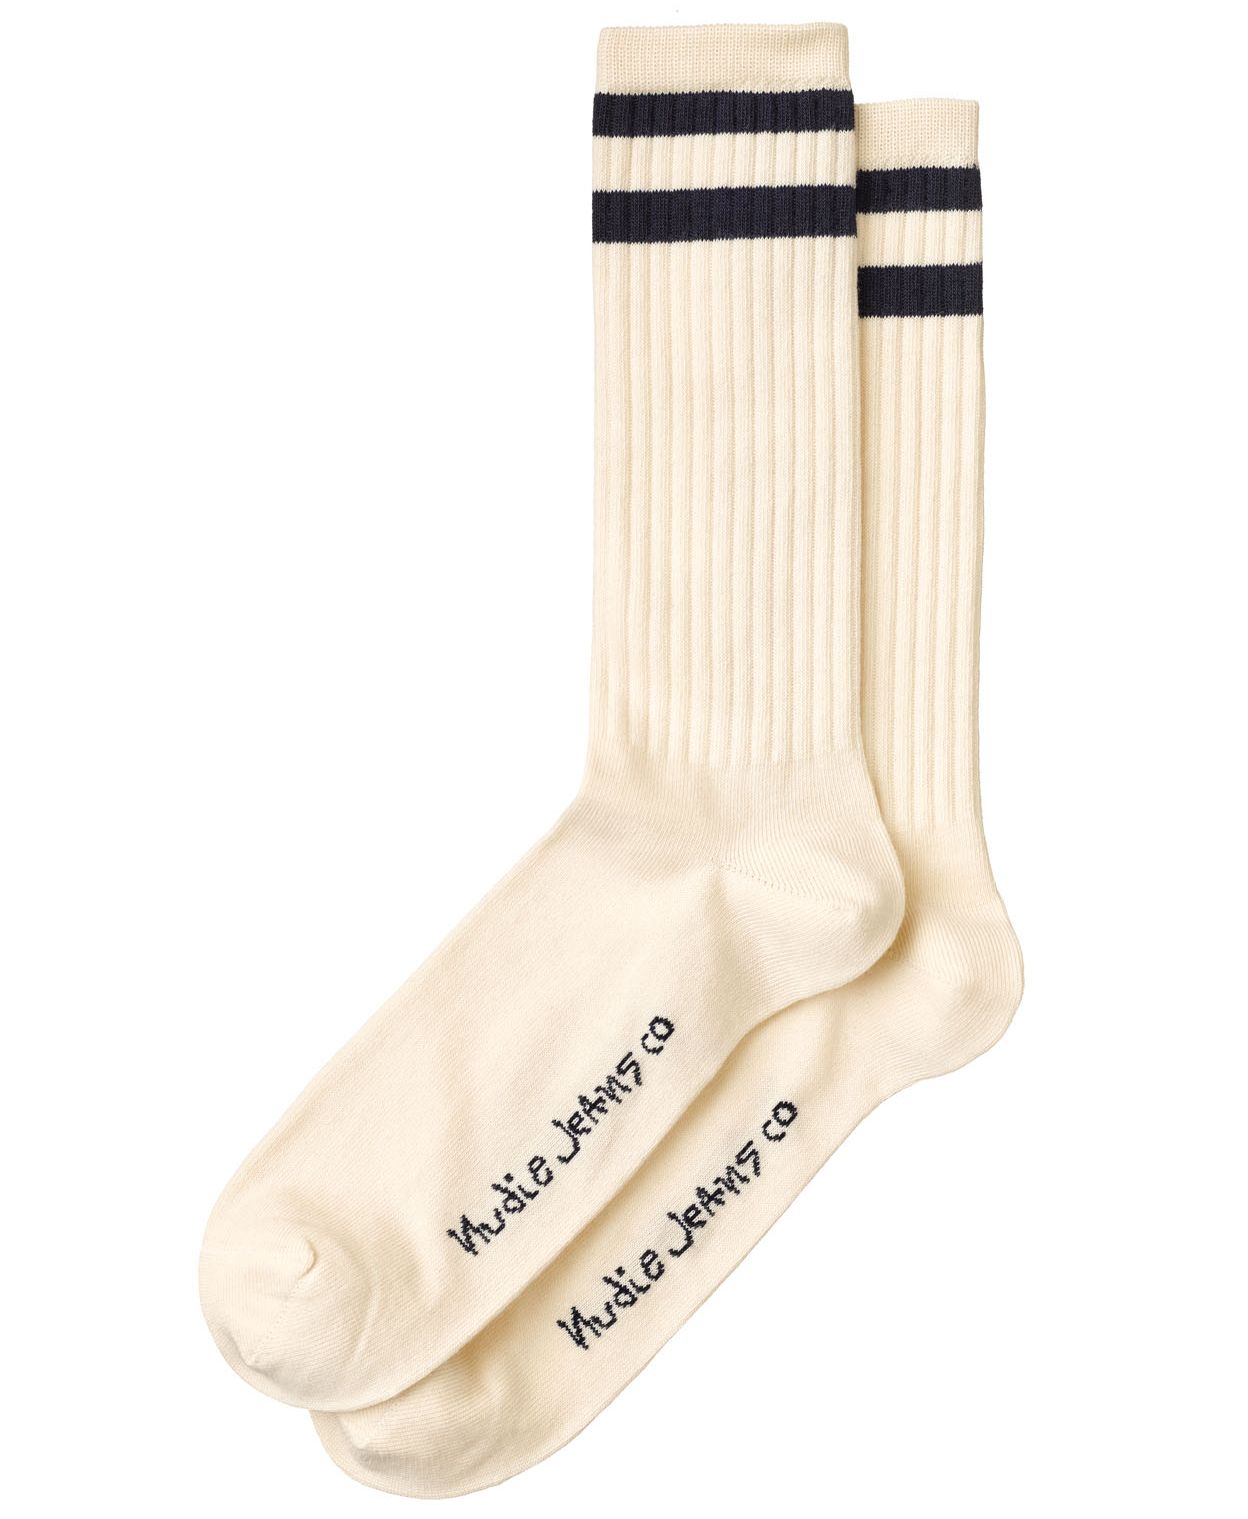 Sportliche Socken Amundsson Offwhite/Navy